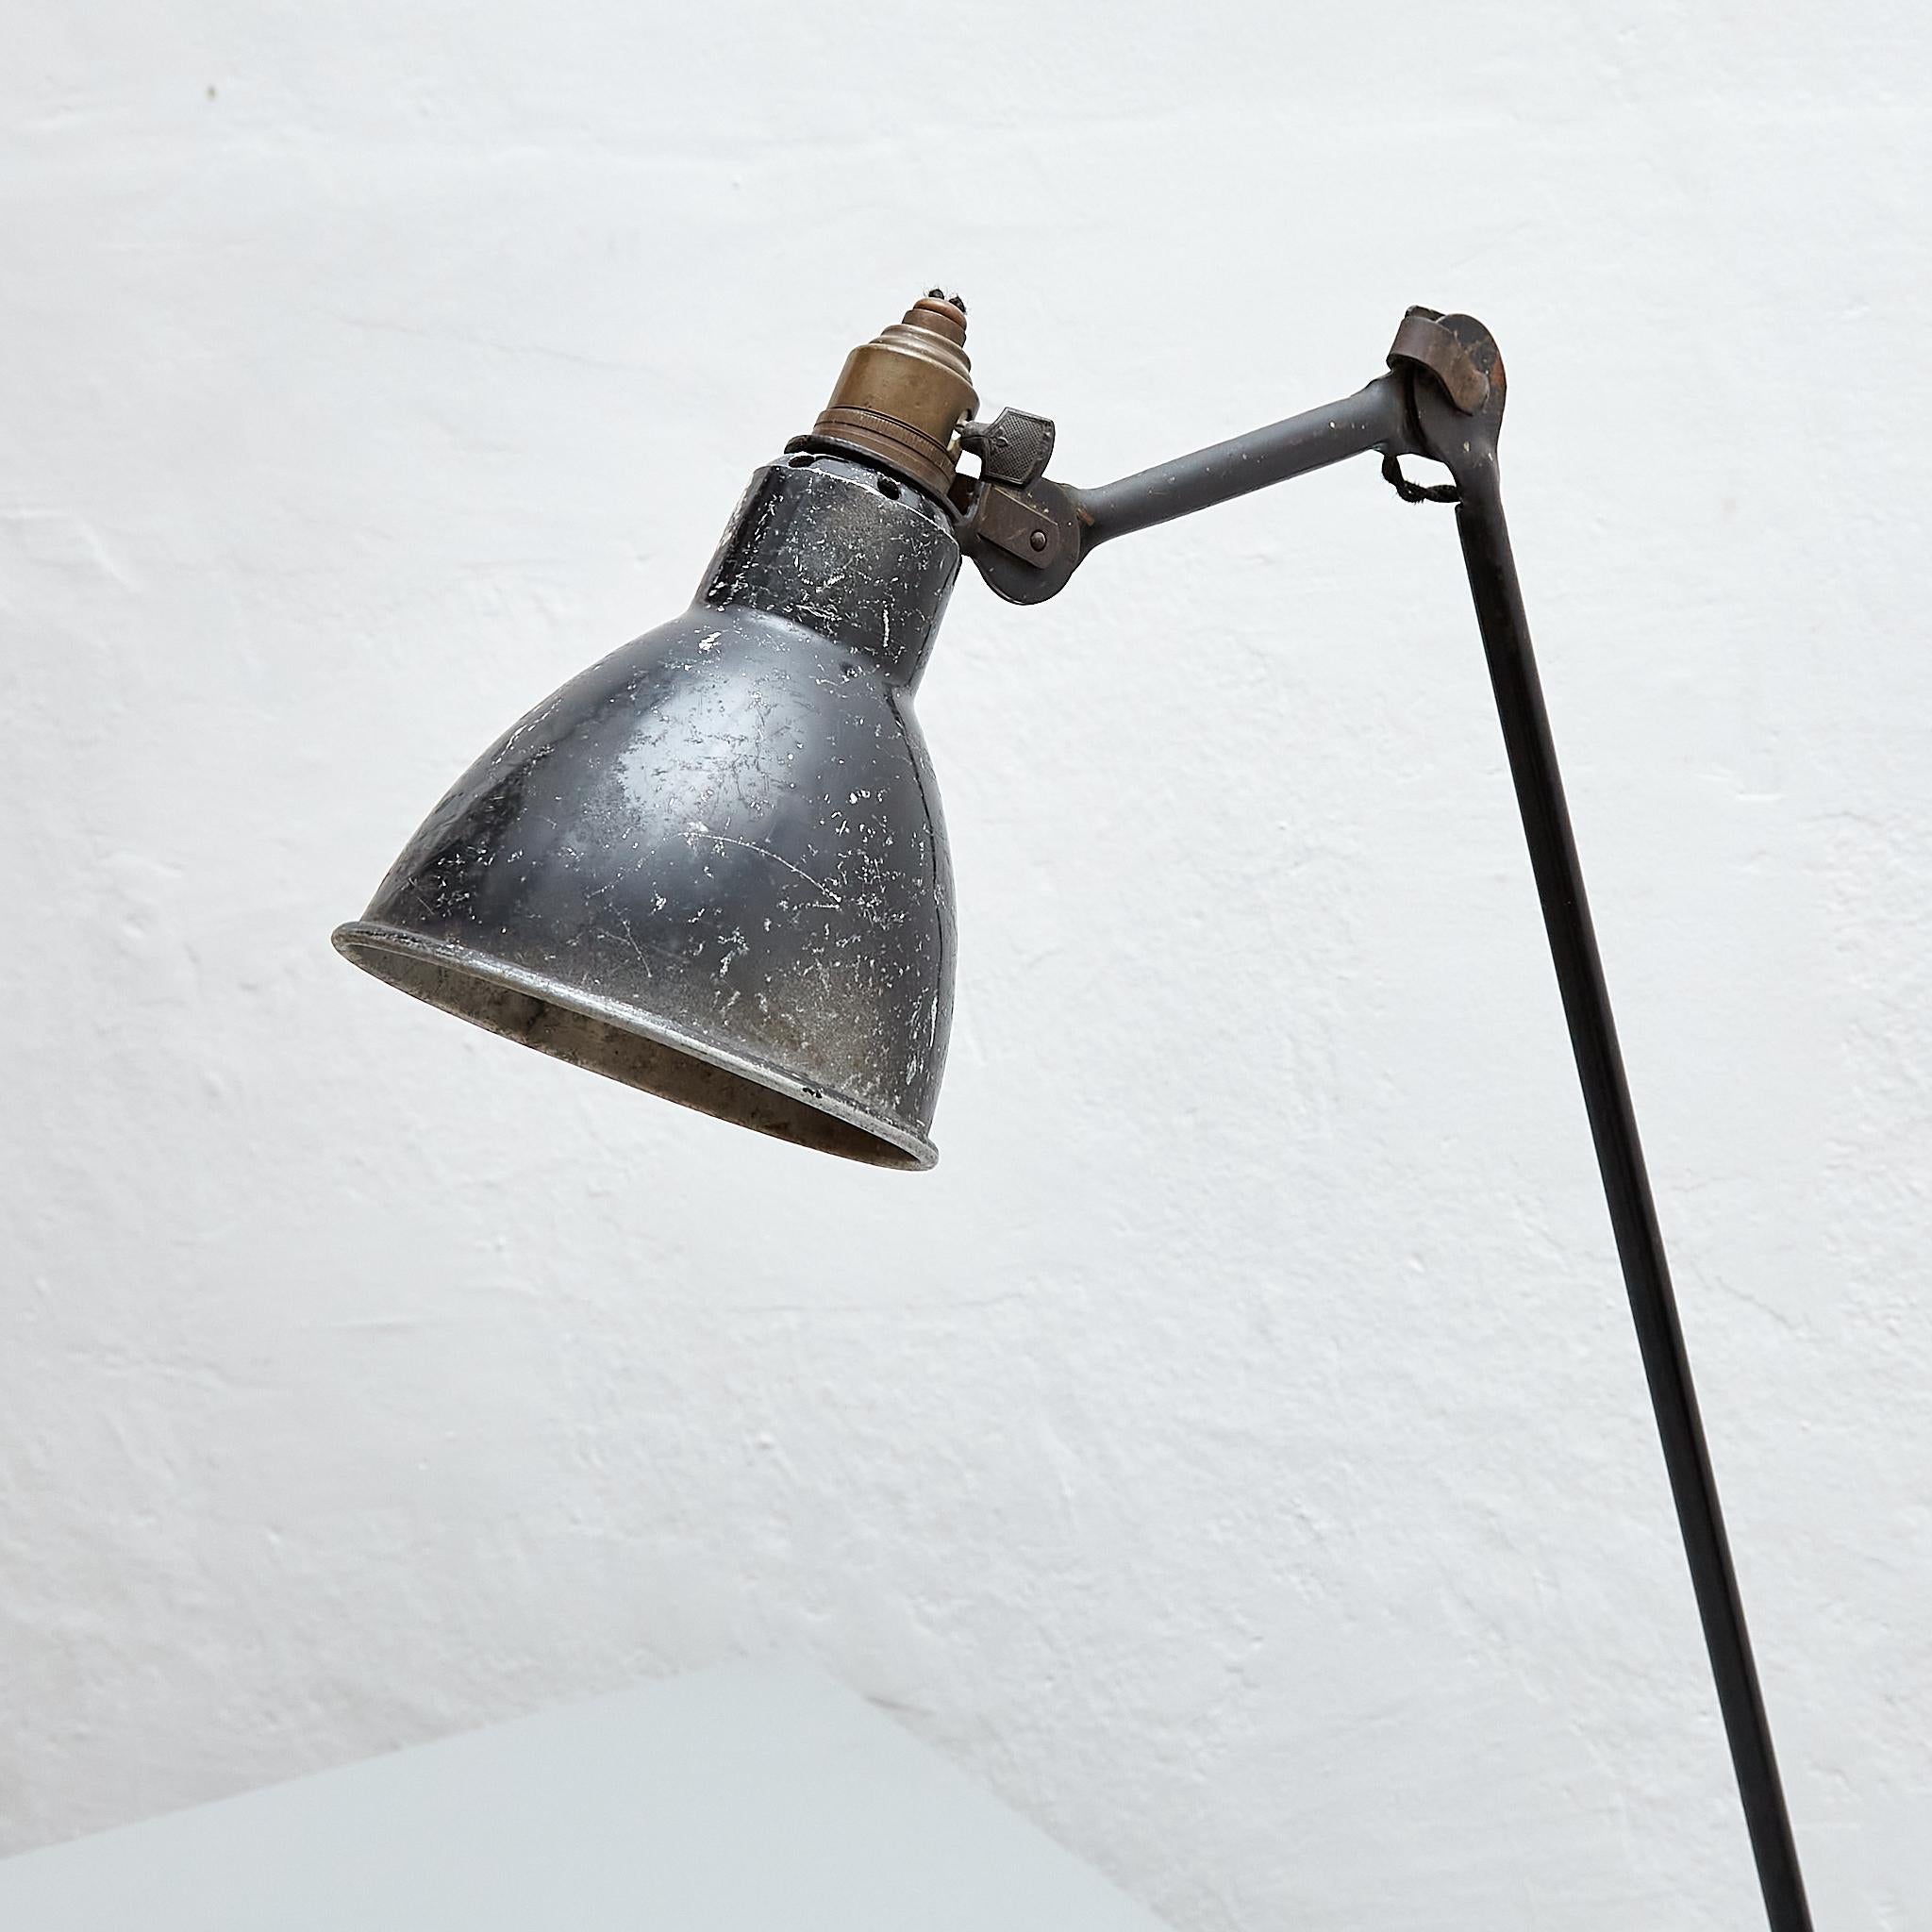 Lampe de table Lampe Gras No. 201 conçue par Bernard-Albin Gras.

Fabriqué par Gras (France), vers 1930.

En bon état d'origine, avec une usure mineure conforme à l'âge et à l'usage, préservant une belle patine.

Matériaux :
Aluminium et